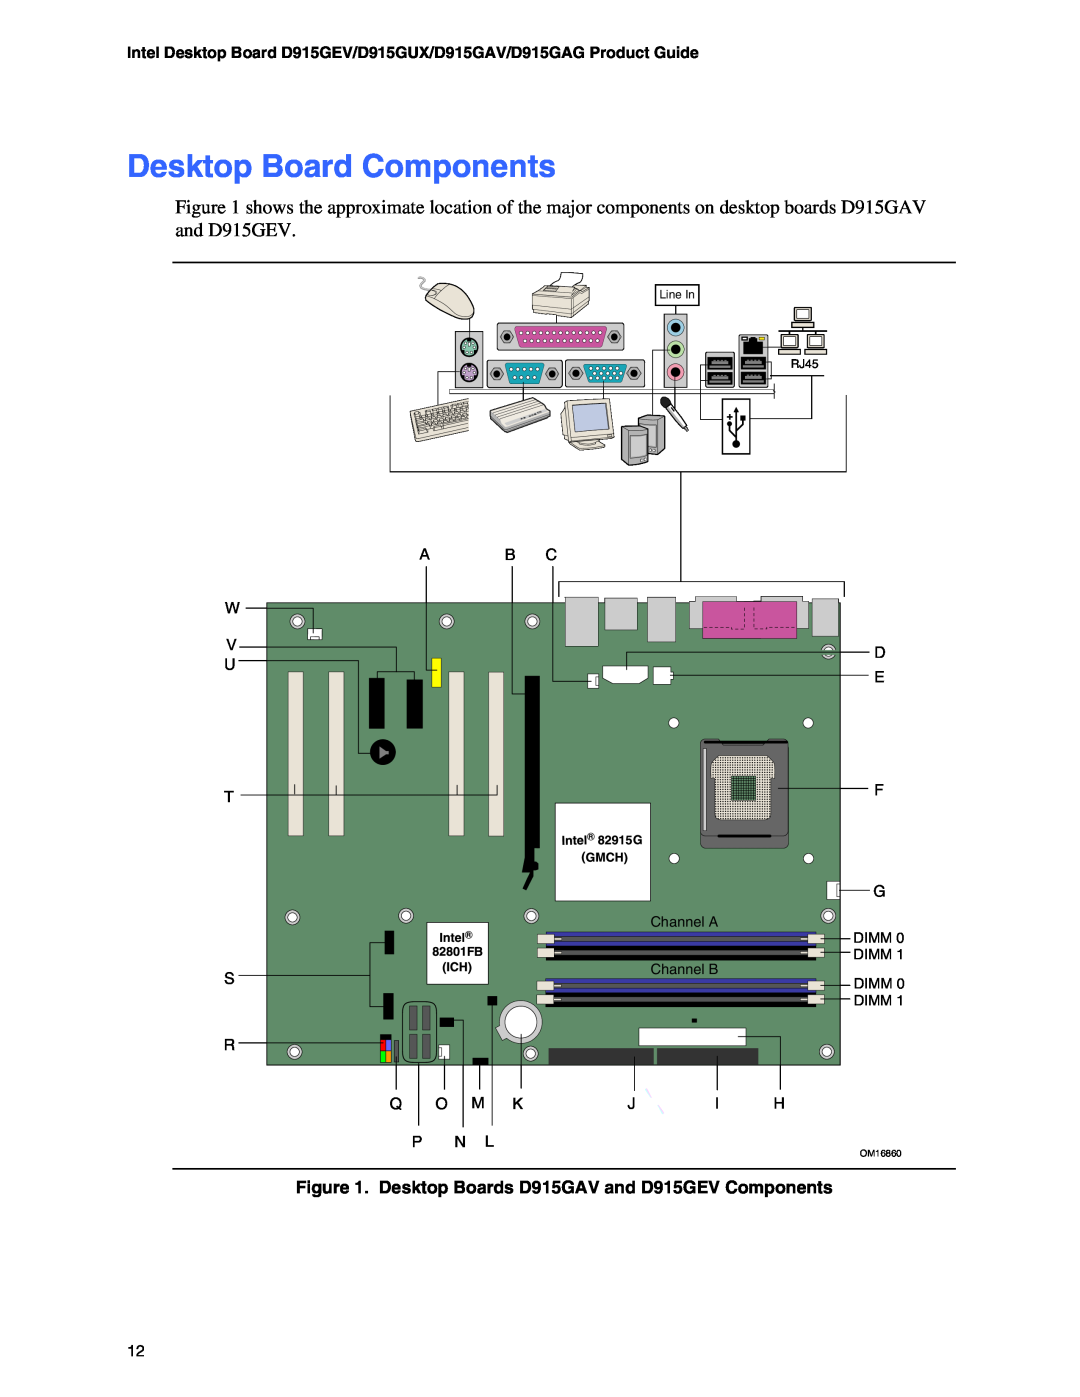 Intel D915GAG, D915GUX, D915GEV, D915GAV manual Desktop Board Components 